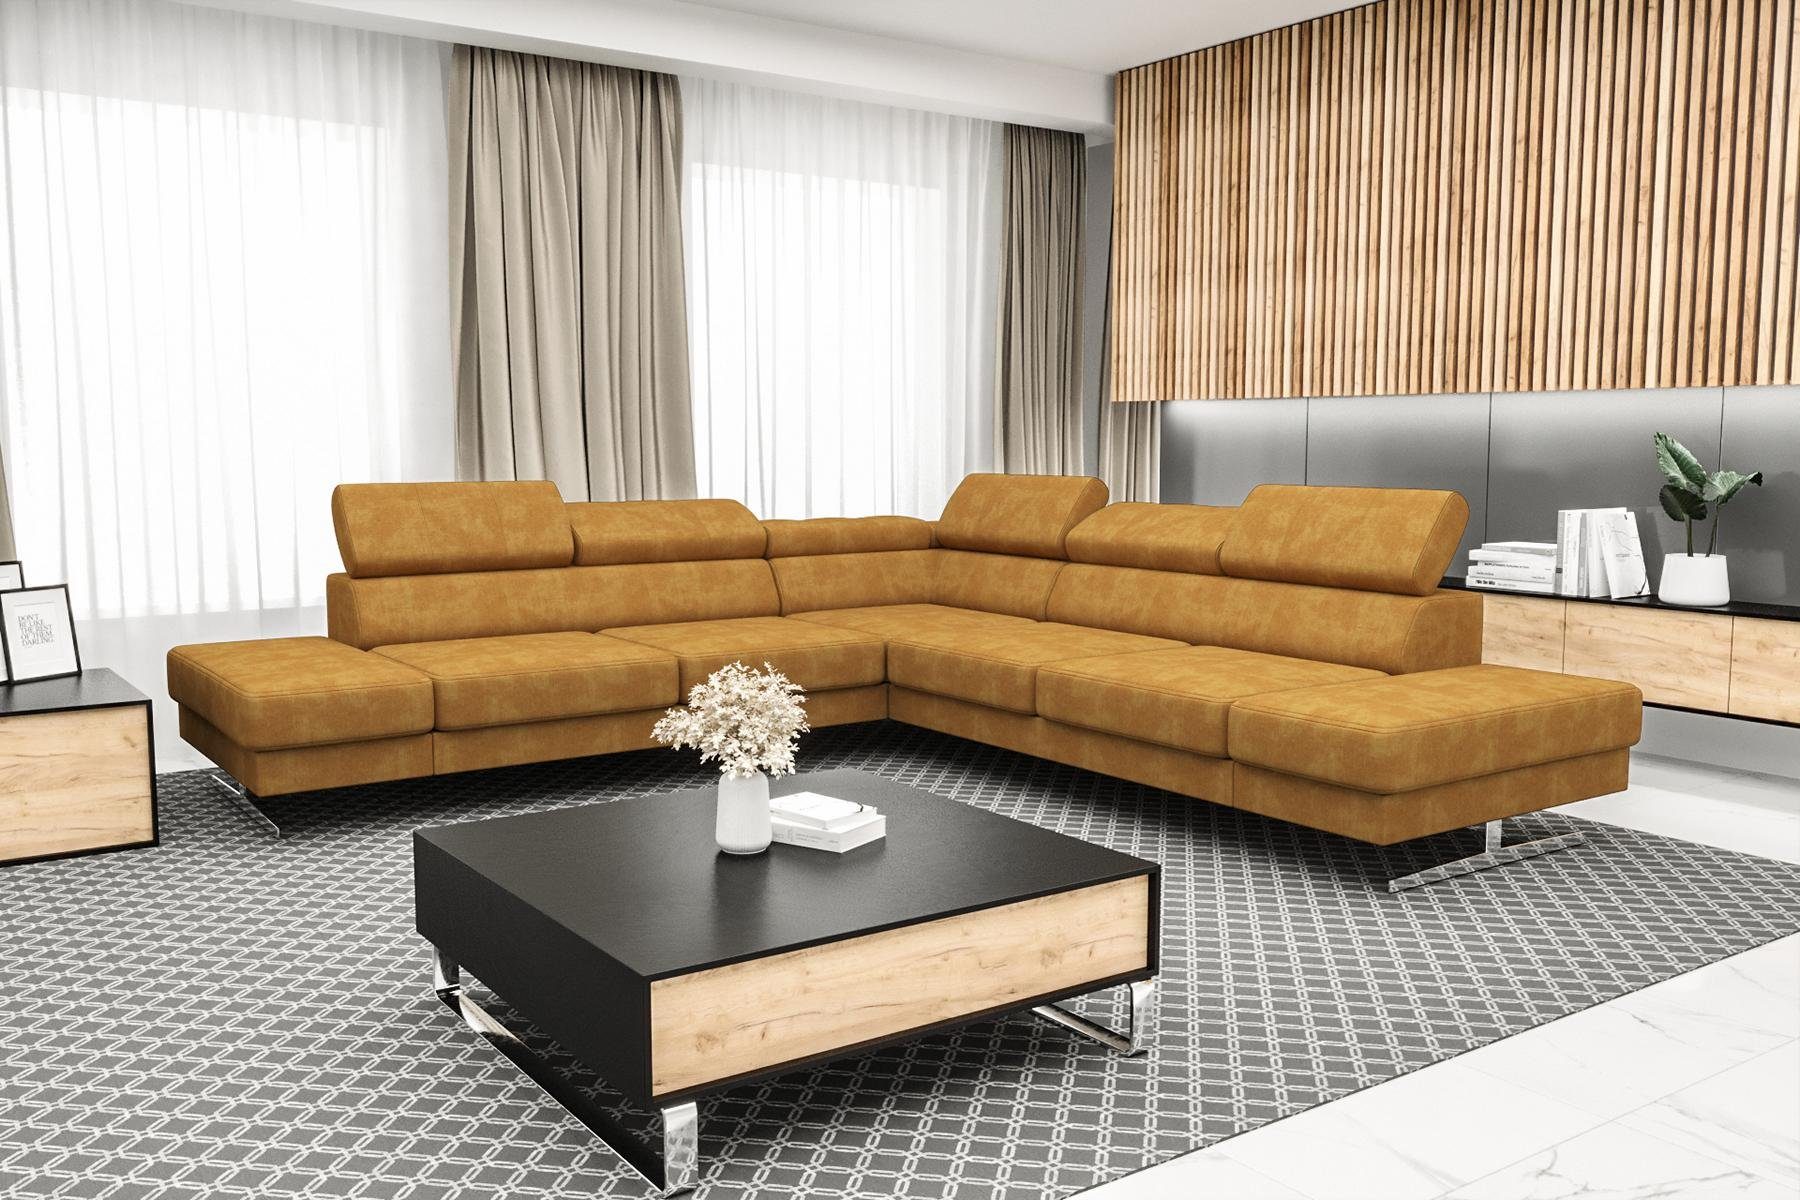 JVmoebel Ecksofa Designer Schwarzes Sofa Orange Couch L-Form Europe Luxus in Textil, Wohnzimmer Made